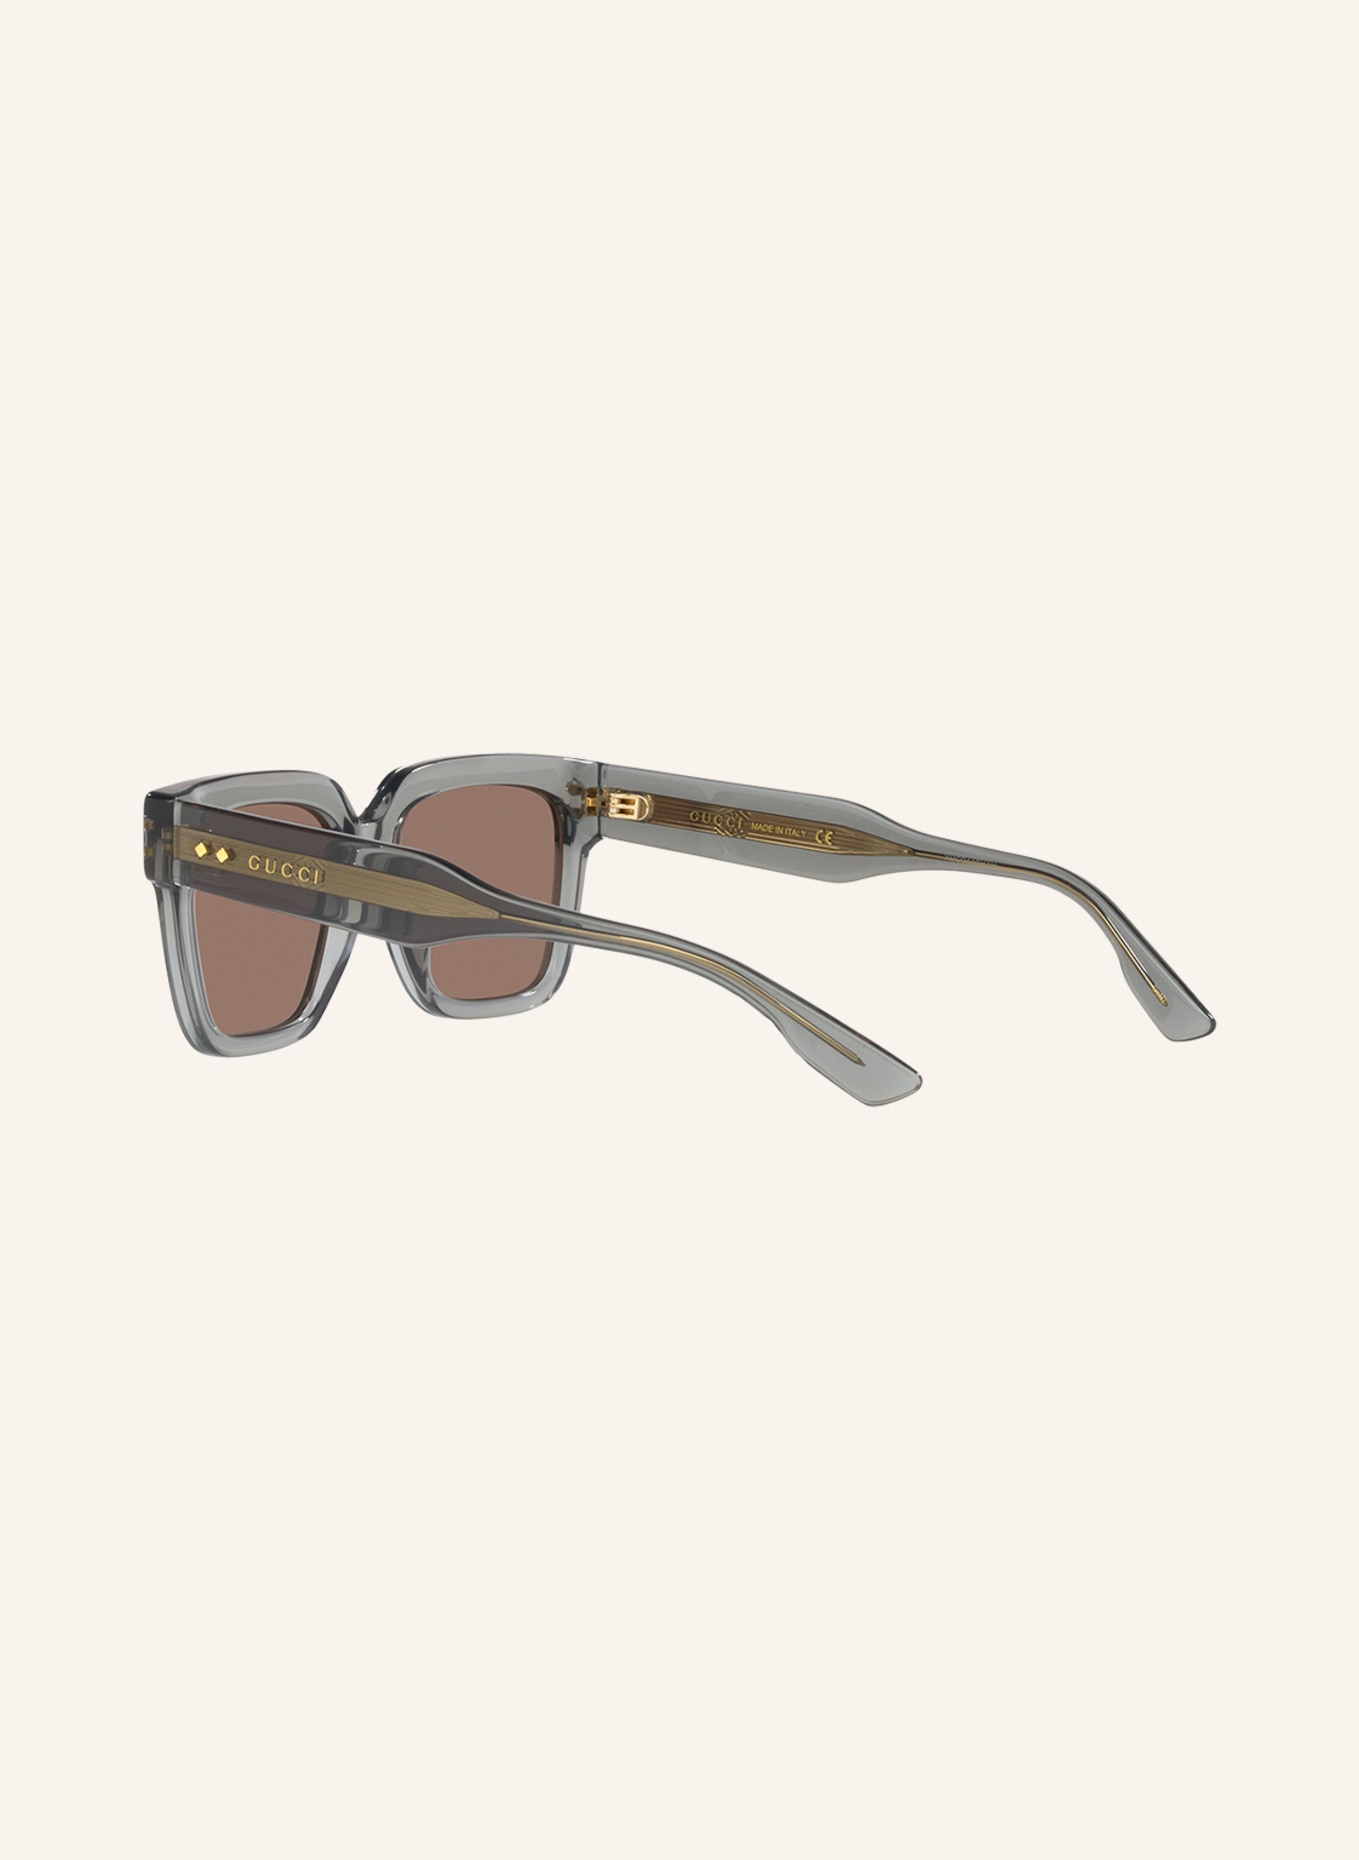 GUCCI Sunglasses GC001829, Color: 2600L1 - GRAY/BROWN (Image 4)